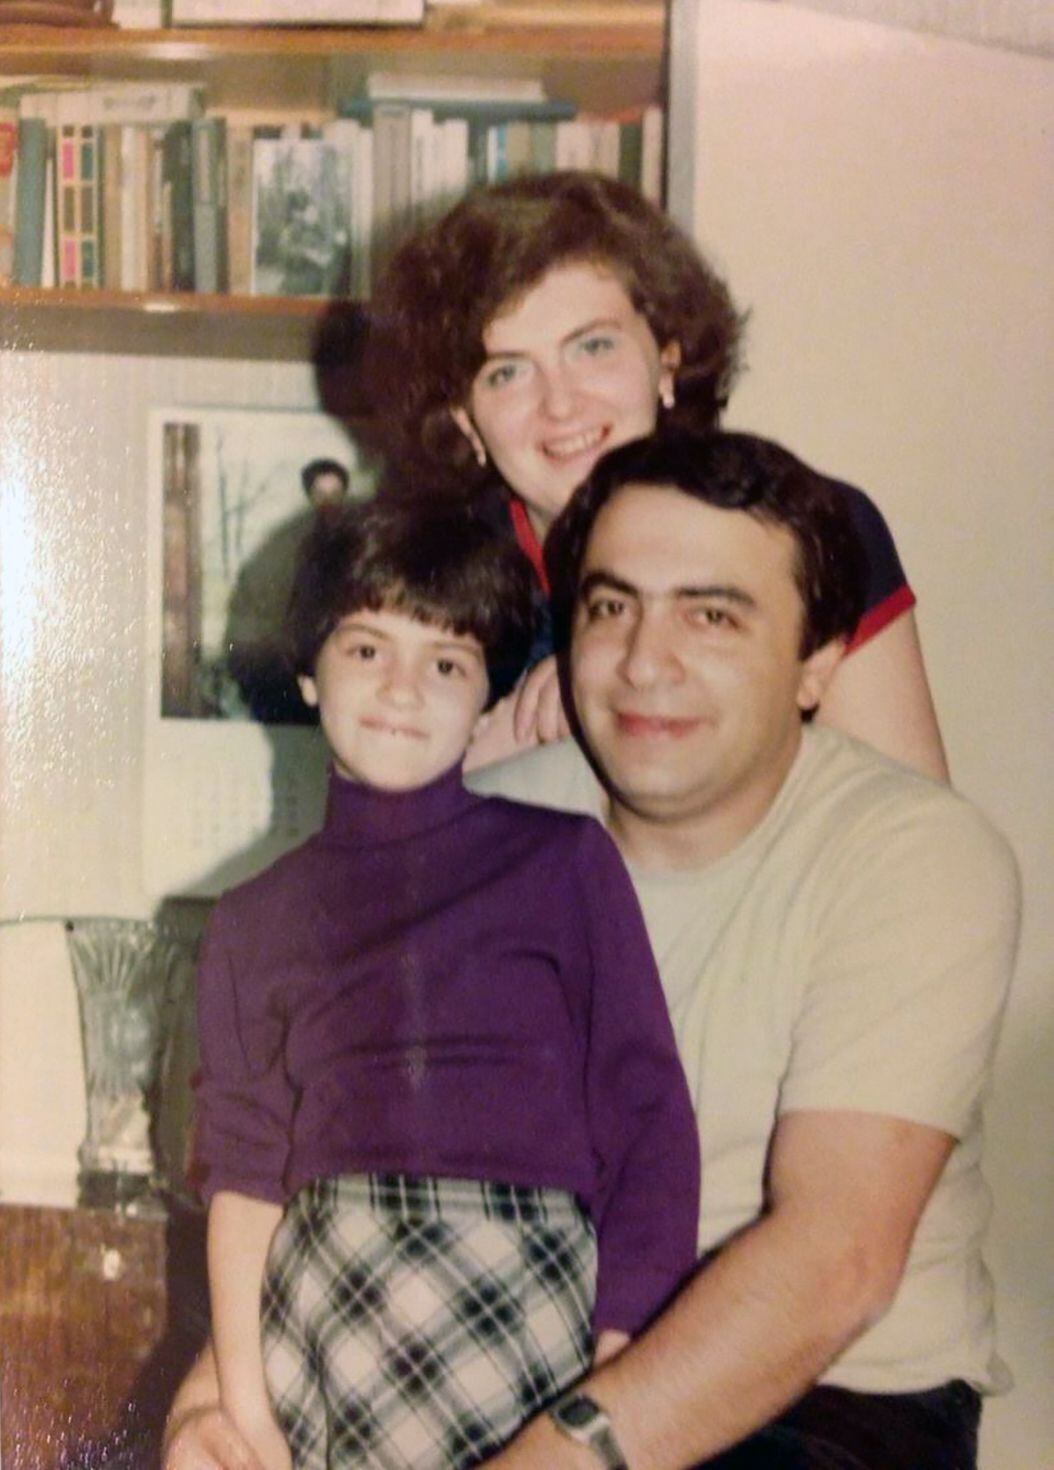 Alona Cherkassky con su madre, de origen ruso, y su padre, proveniente de Ucrania, en 1982. Cherkassky creció en Moscú, pero pasó muchos veranos en Odesa, Ucrania. (Vía The New York Times).